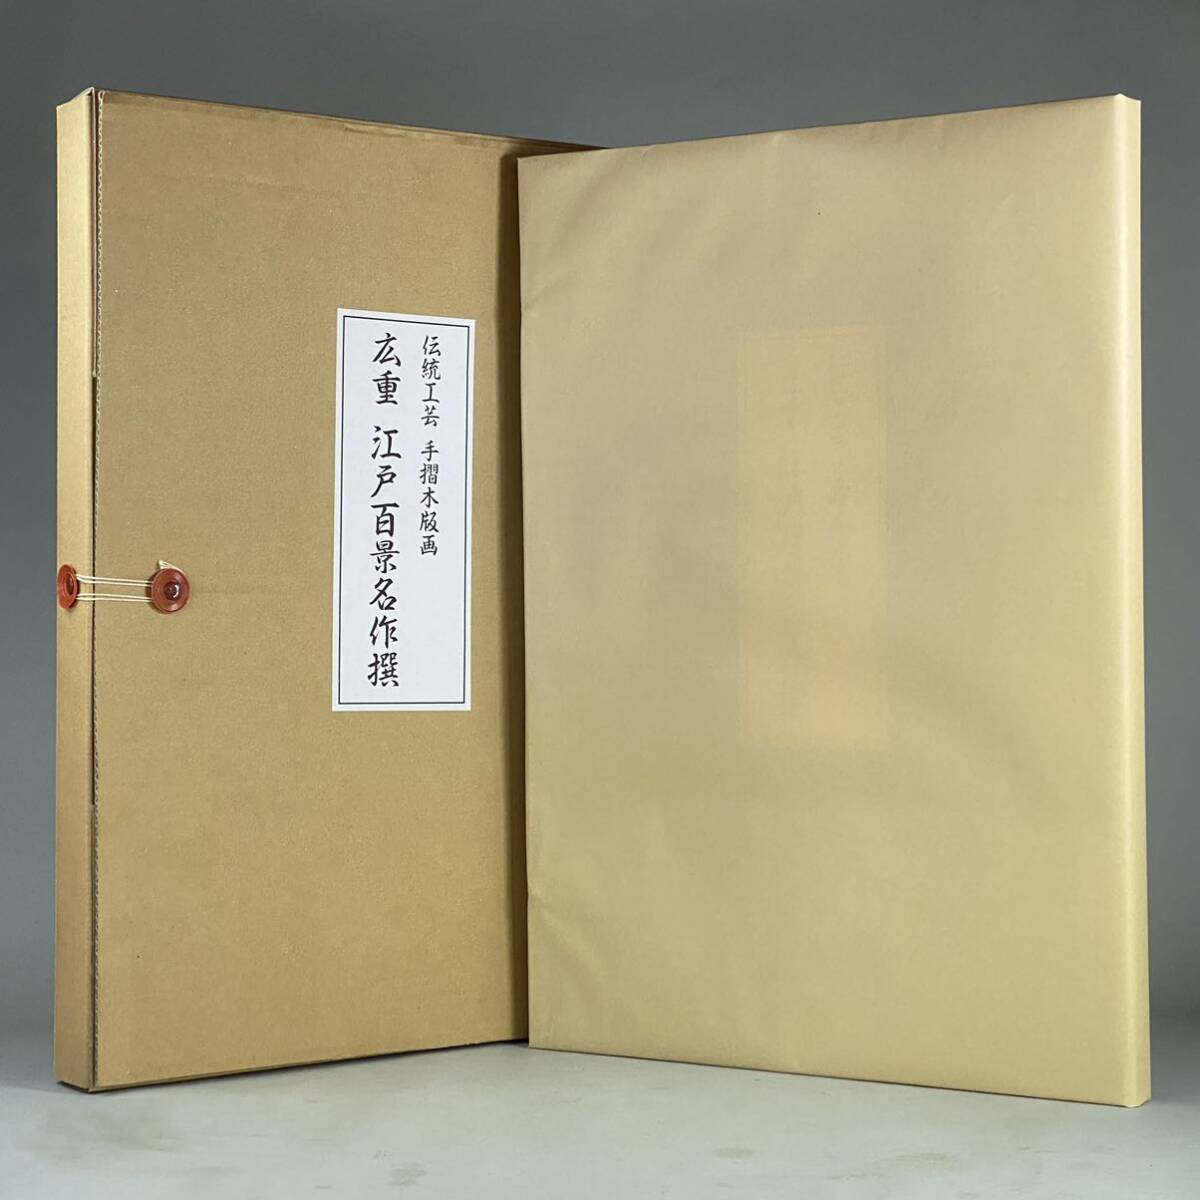 एमजे240313-2 [मूल्यवान सीमित वस्तु, अप्रकाशित] हिरोशिगे उटागावा, युयुडो प्रकाशन, पारंपरिक शिल्प, रेलिंग वुडब्लॉक प्रिंट, हिरोशिगे का 100 ईदो उत्कृष्ट कृतियों का संग्रह, 15 पीस का सेट, पुनर्मुद्रण, जापानी पेंटिंग, Ukiyo ए, परिदृश्य चित्रकला, चित्रकारी, Ukiyo ए, छपाई, प्रसिद्ध स्थान चित्र